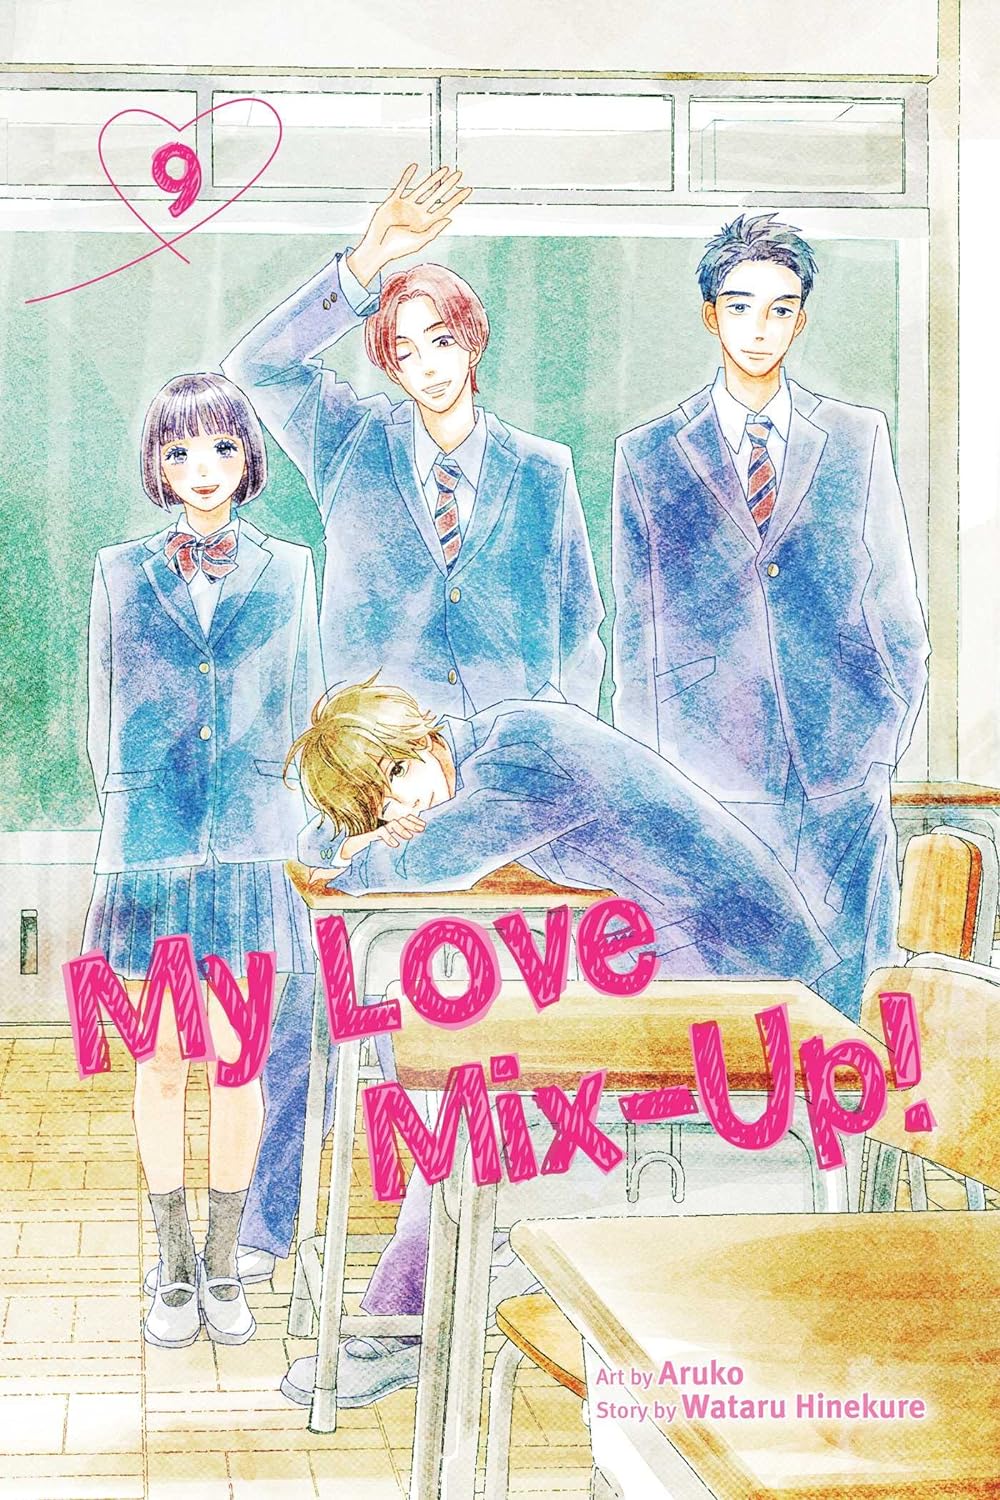 My Love Mix-Up! vol. 9 by Aruko and Wataru Hinekure from Shojo Beat / VIZ Media